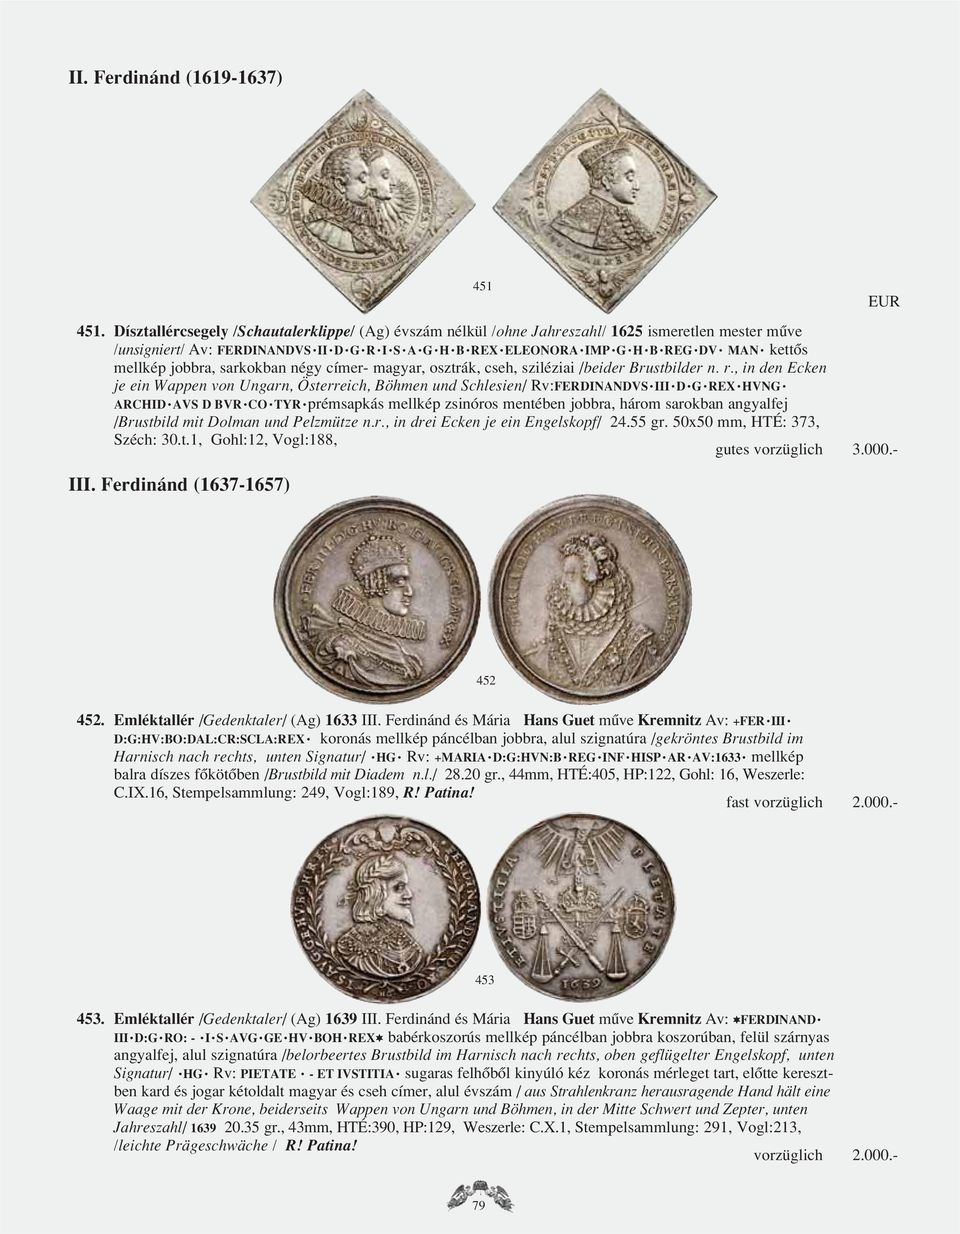 mellkép jobbra, sarkokban négy címer- magyar, osztrák, cseh, sziléziai /beider Brustbilder n. r.